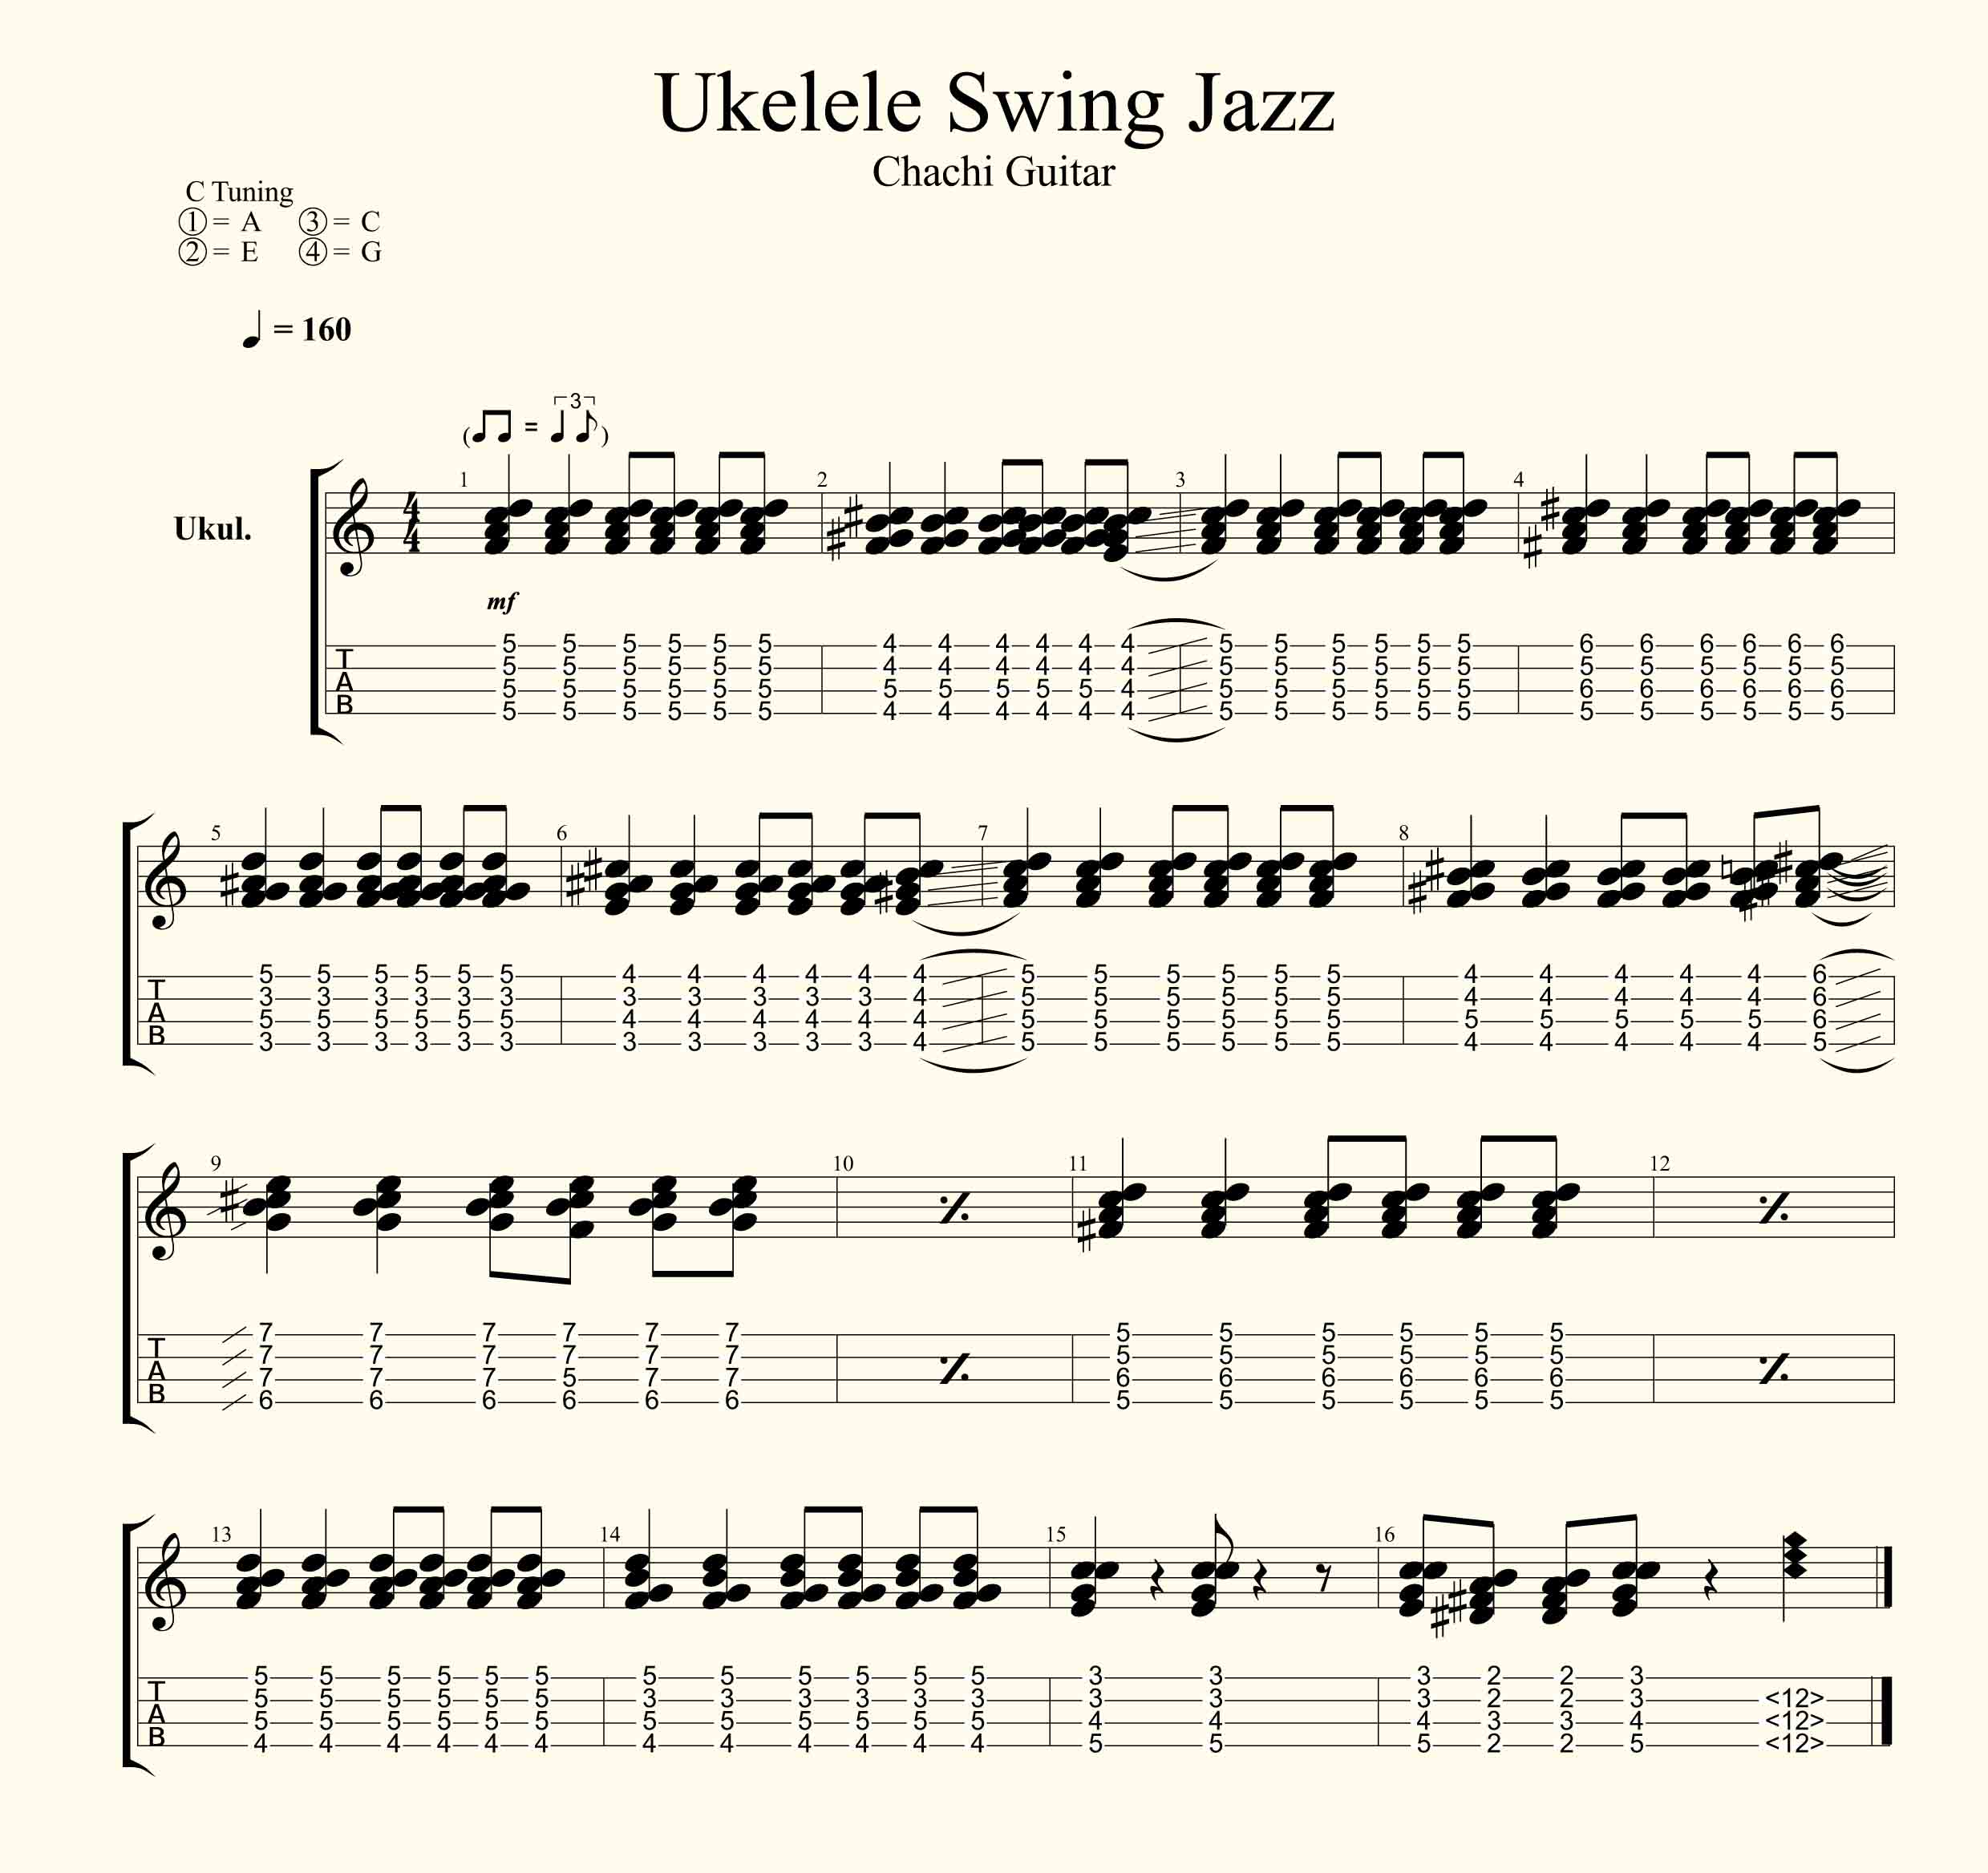 Ukelele Swing Jazz Acordes Faciles Como Tocar Jazz Chachi Guitar Con estos cuatro acordes seras capaz de tocar 69 canciones en un instante! ukelele swing jazz acordes faciles